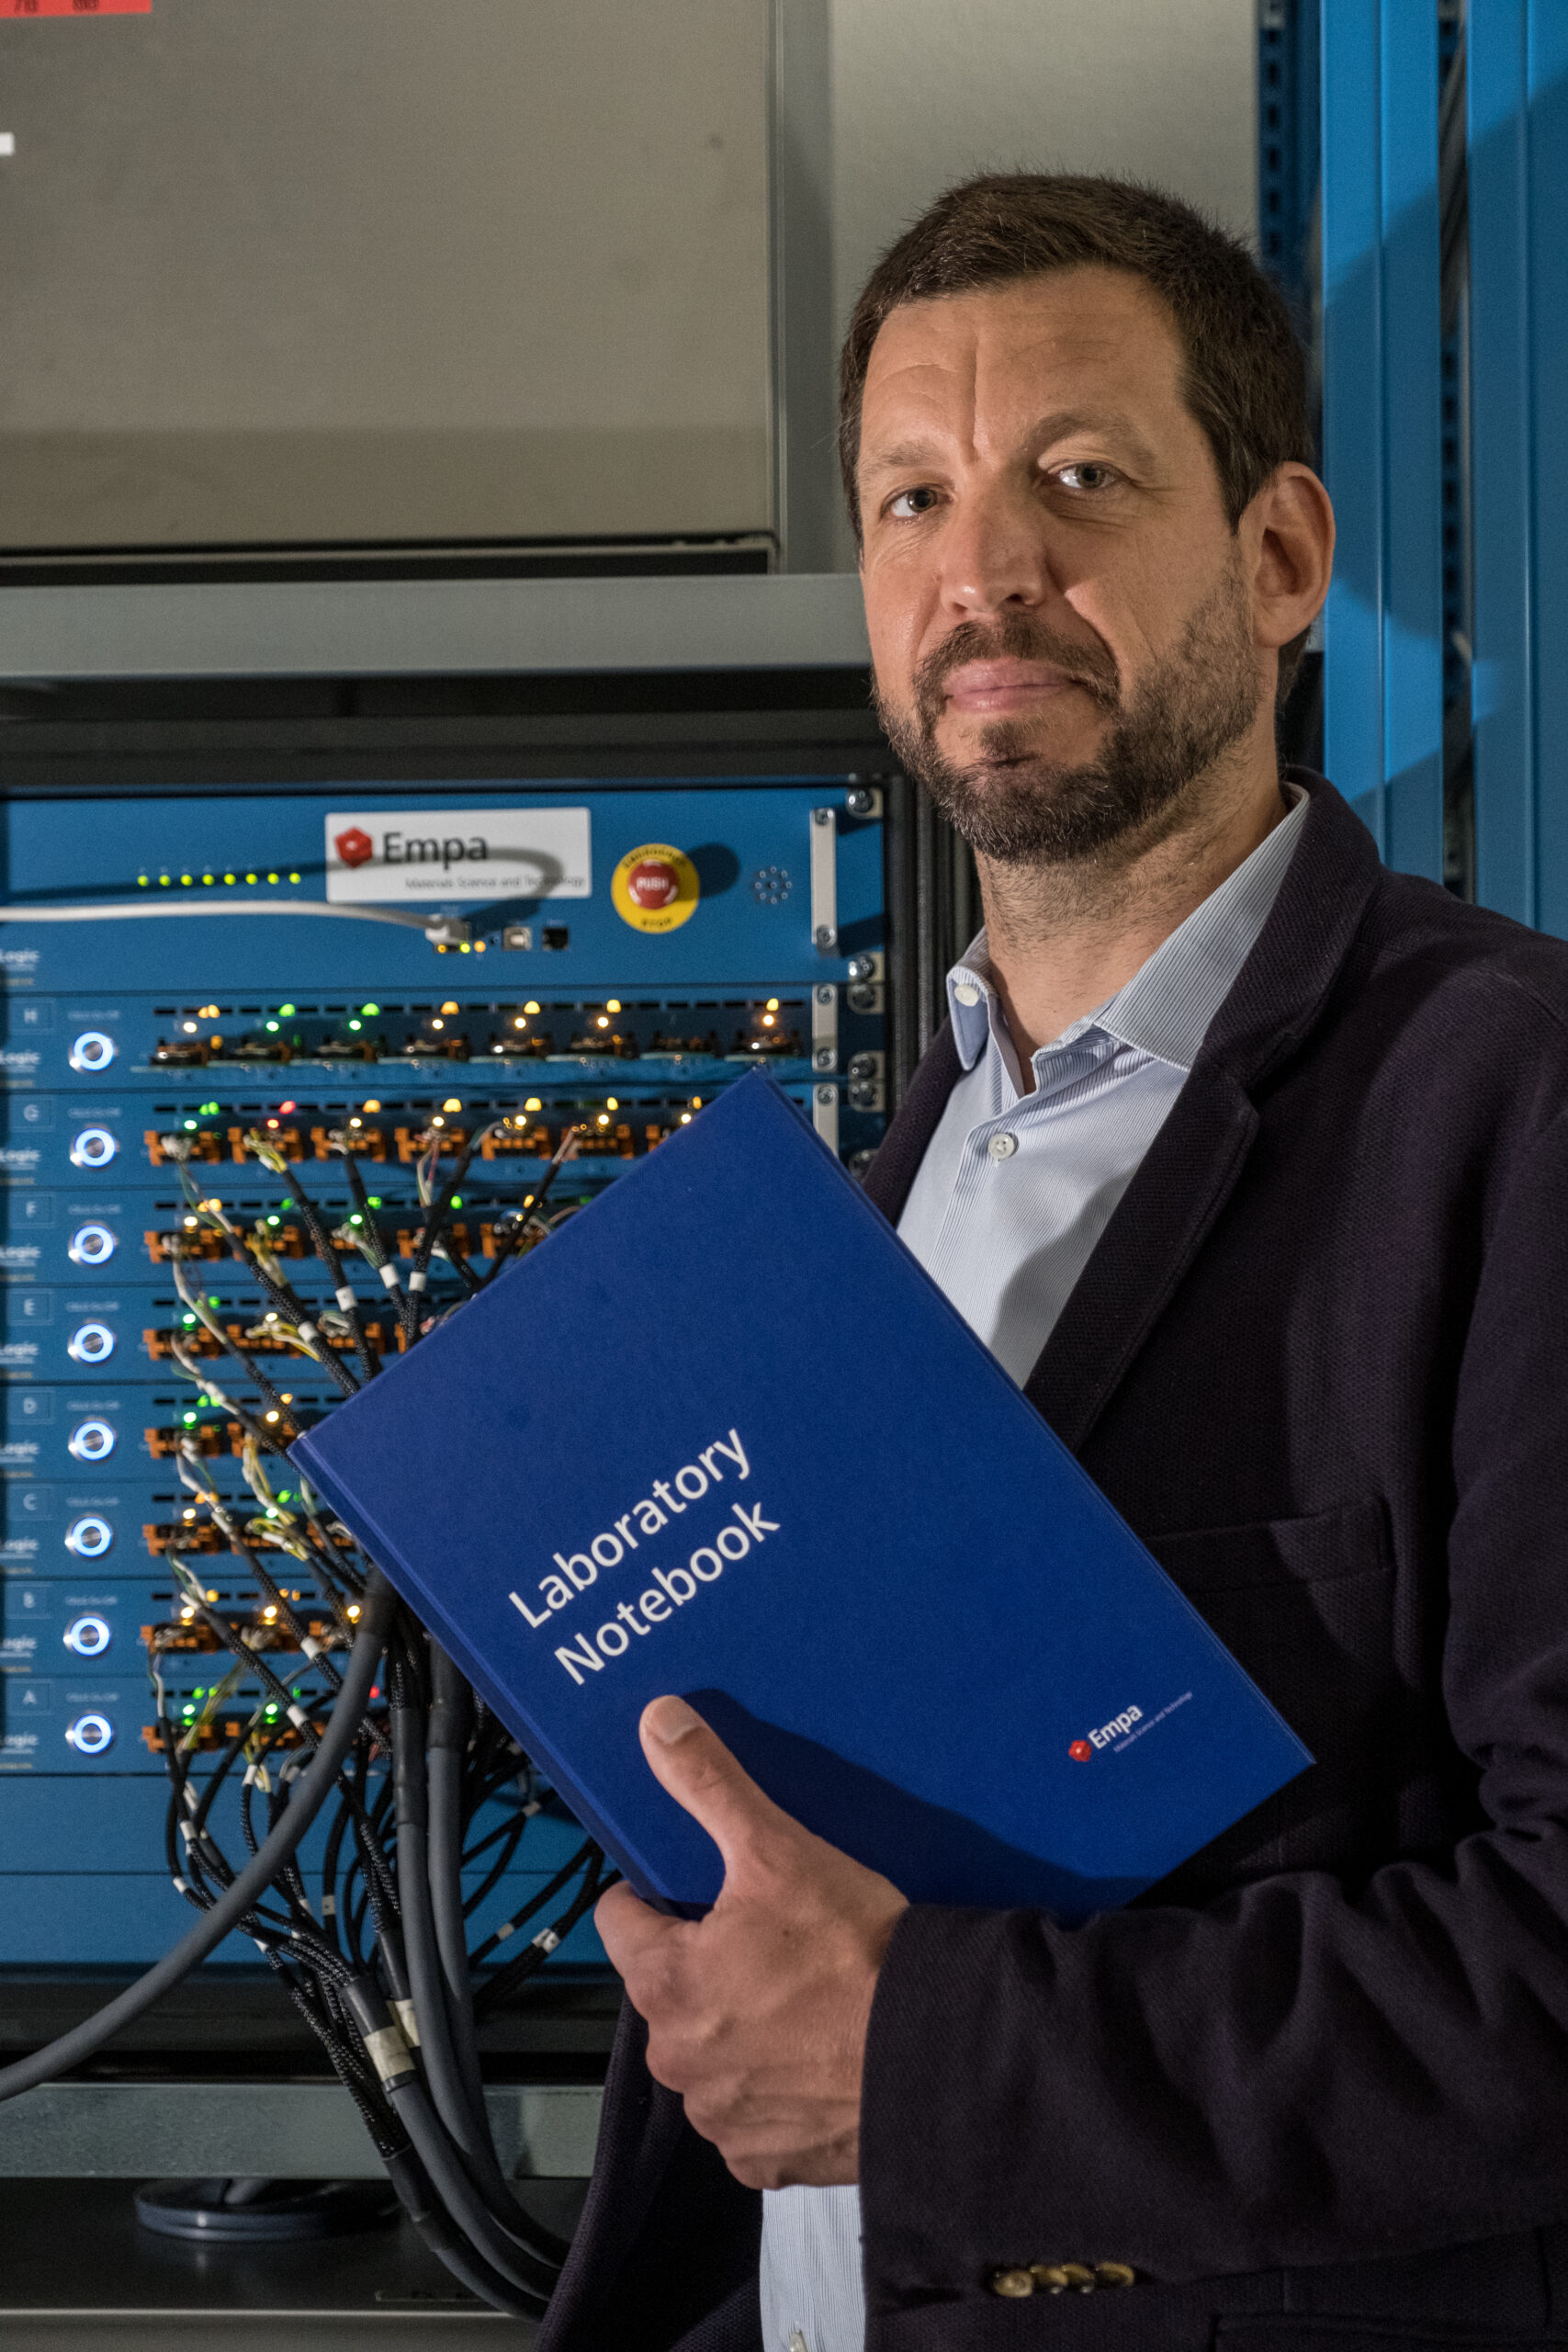 Корсін Батталья, науковий співробітник Швейцарської федеральної лабораторії матеріалознавства та технології, очолює один із трьох підпроектів дослідницької ініціативи CircuBAT (Фото: EMPA)